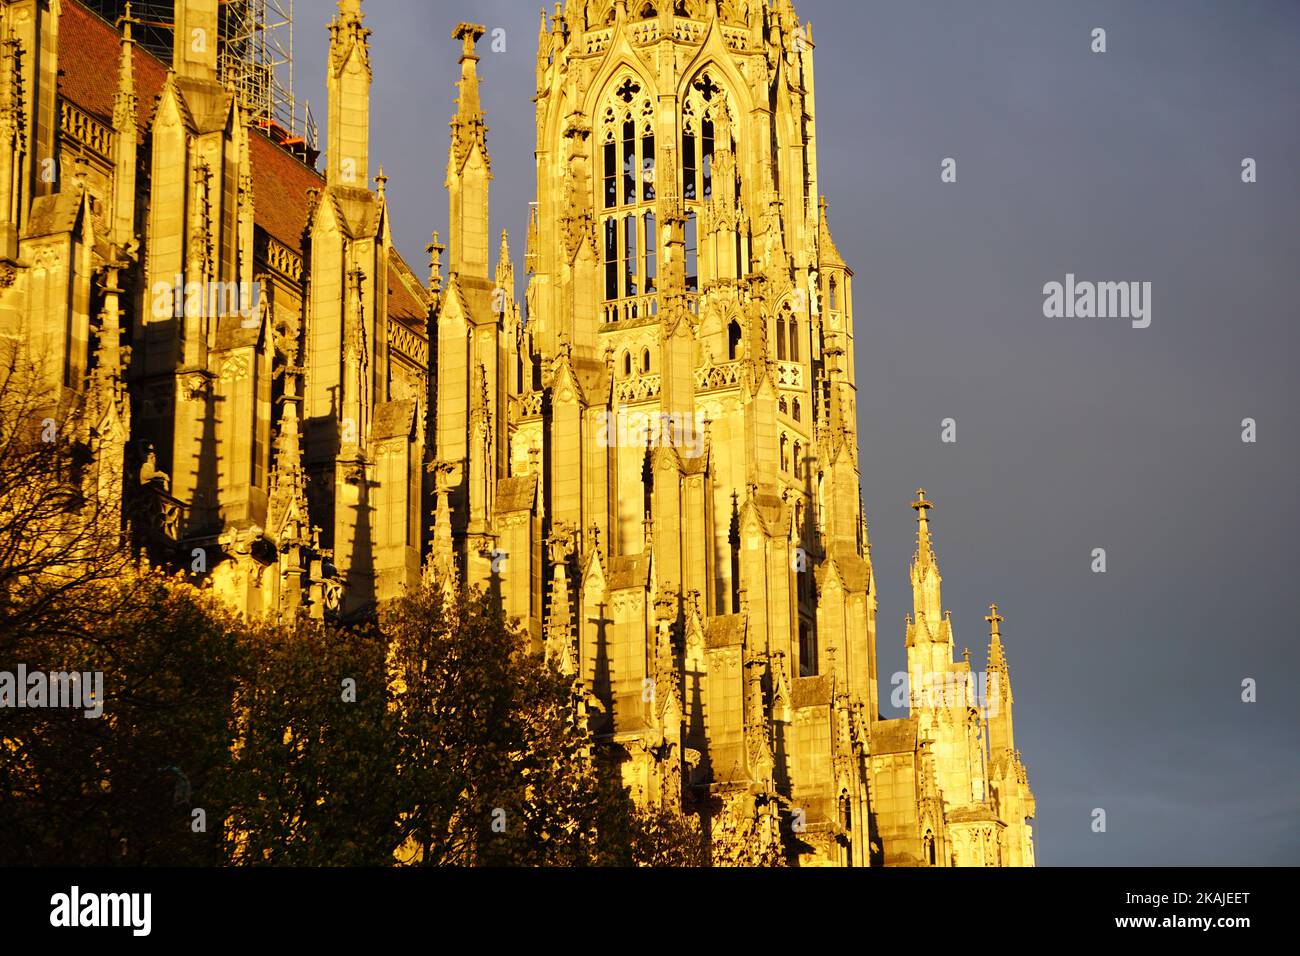 Eine wunderschöne Aussicht auf das Ulmer Münster in Ulm, Deutschland mit goldenem Sonnenlicht unter einem dunklen bewölkten Himmel Stockfoto